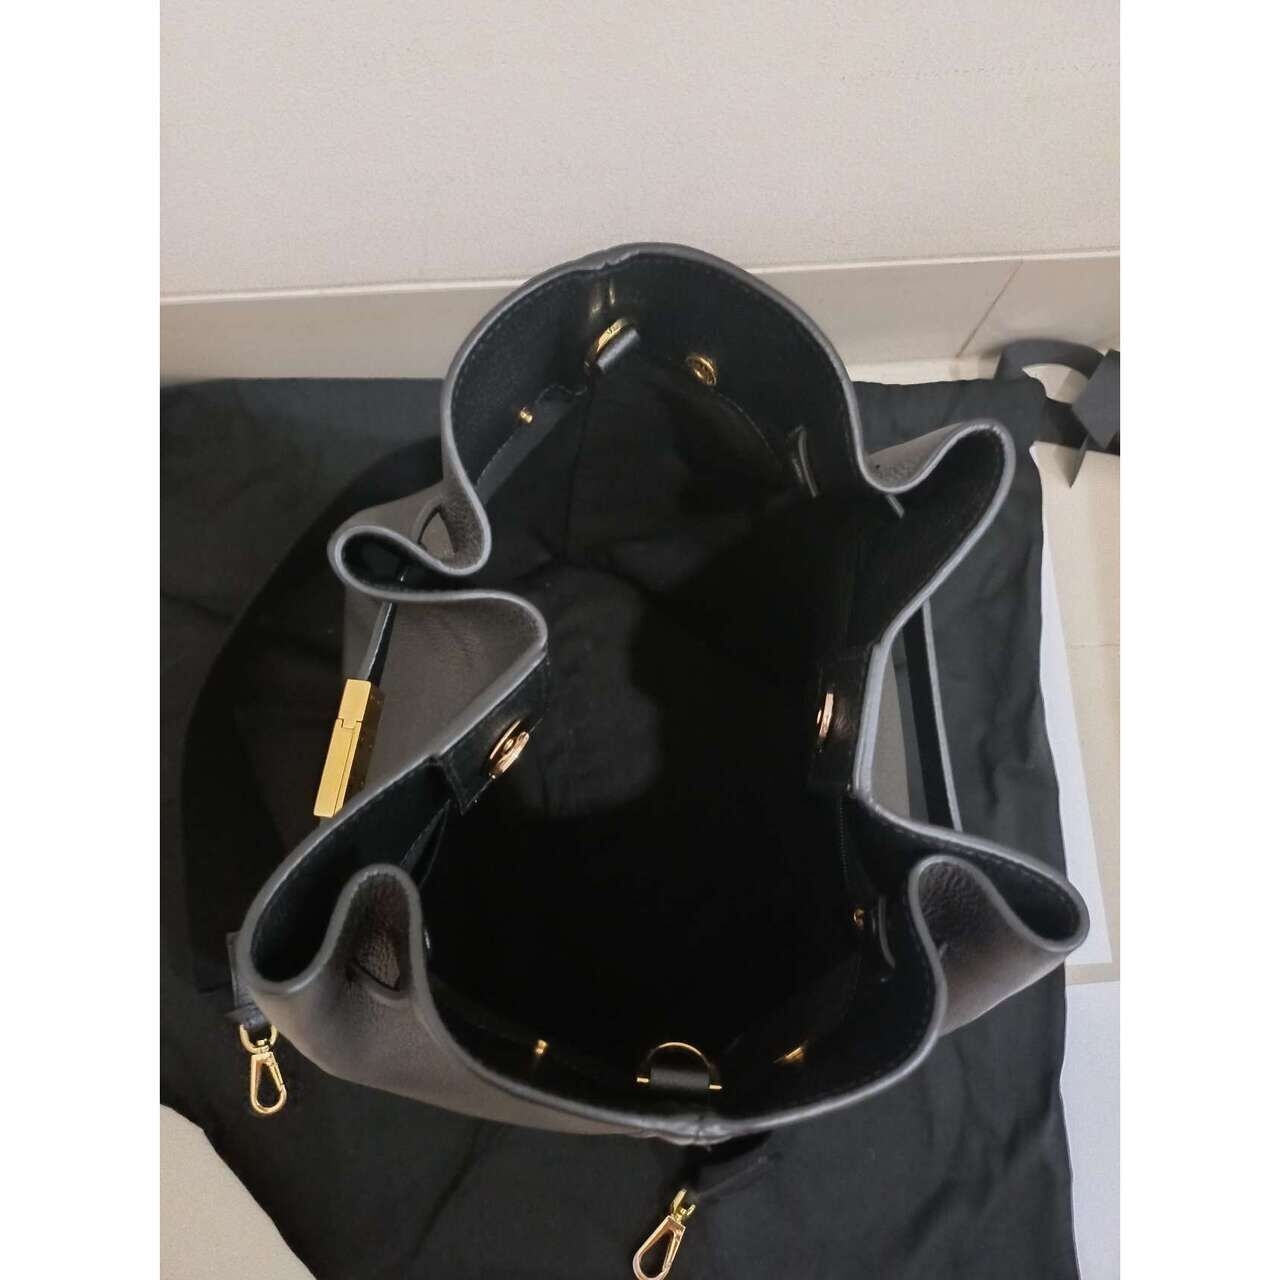 DeMellier Black Sling Bag